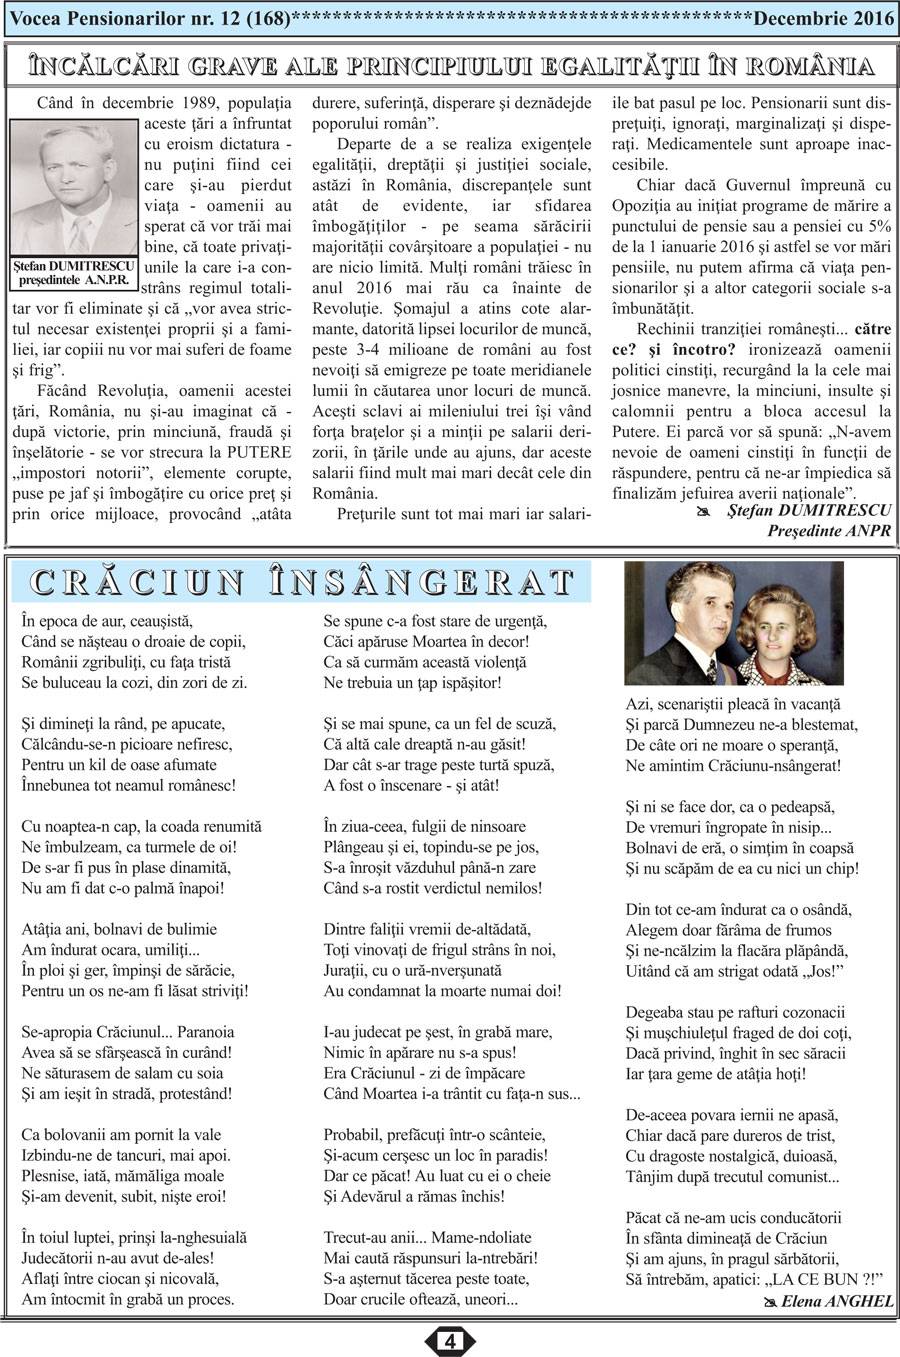 Ziar Vocea Pensionarilor luna decembrie 2016 publicatie ANPR